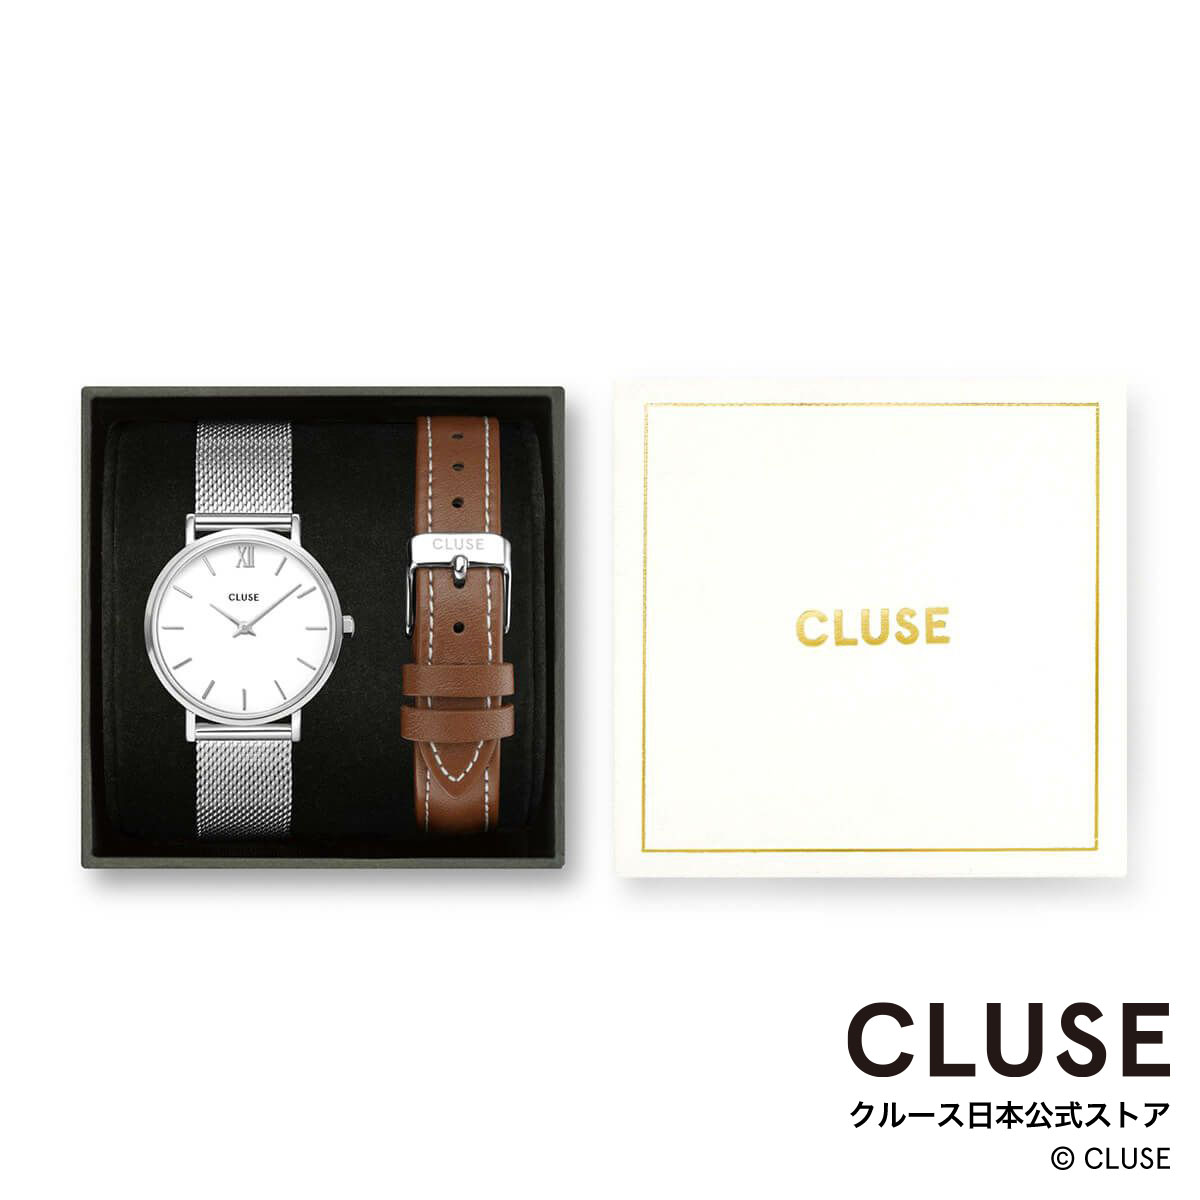 クルース ビジネス腕時計 レディース クルース CLUSE 日本公式ストア ミニュイ ホワイト シルバー メッシュ ブラウン レザー ベルト ギフトボックス レディース 女性 腕時計 時計 防水 クォーツ